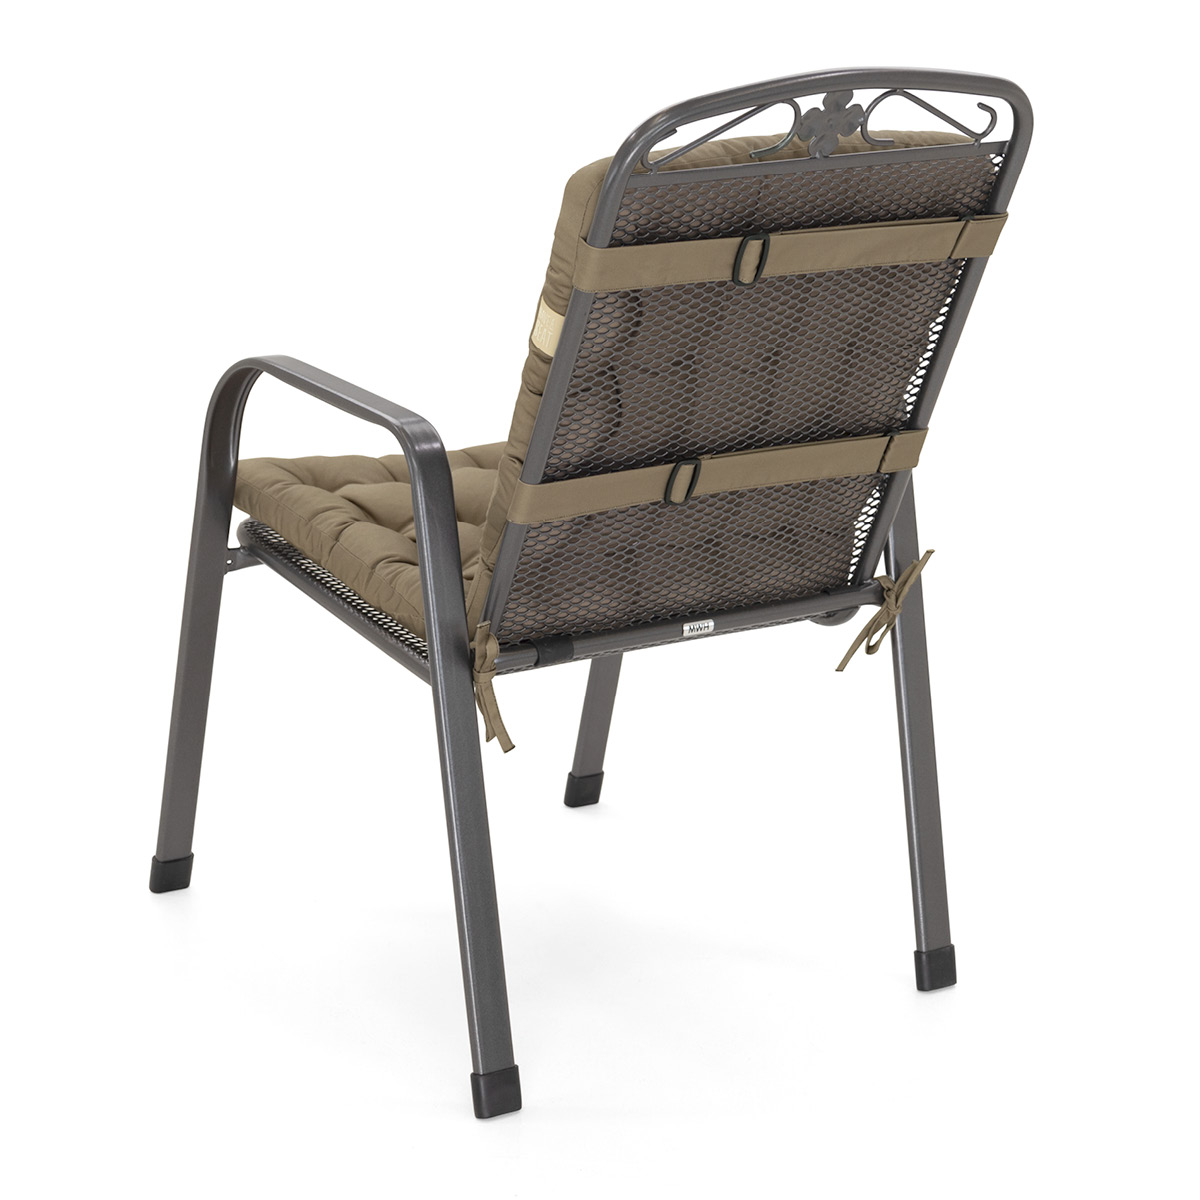 Sitzkissen mit Rückenlehne goldbraun | dicke Polsterung mit Schleifen und Bänder zur Befestigung an Gartenstuhl / Stapelstuhl | HAVE A SEAT Living 